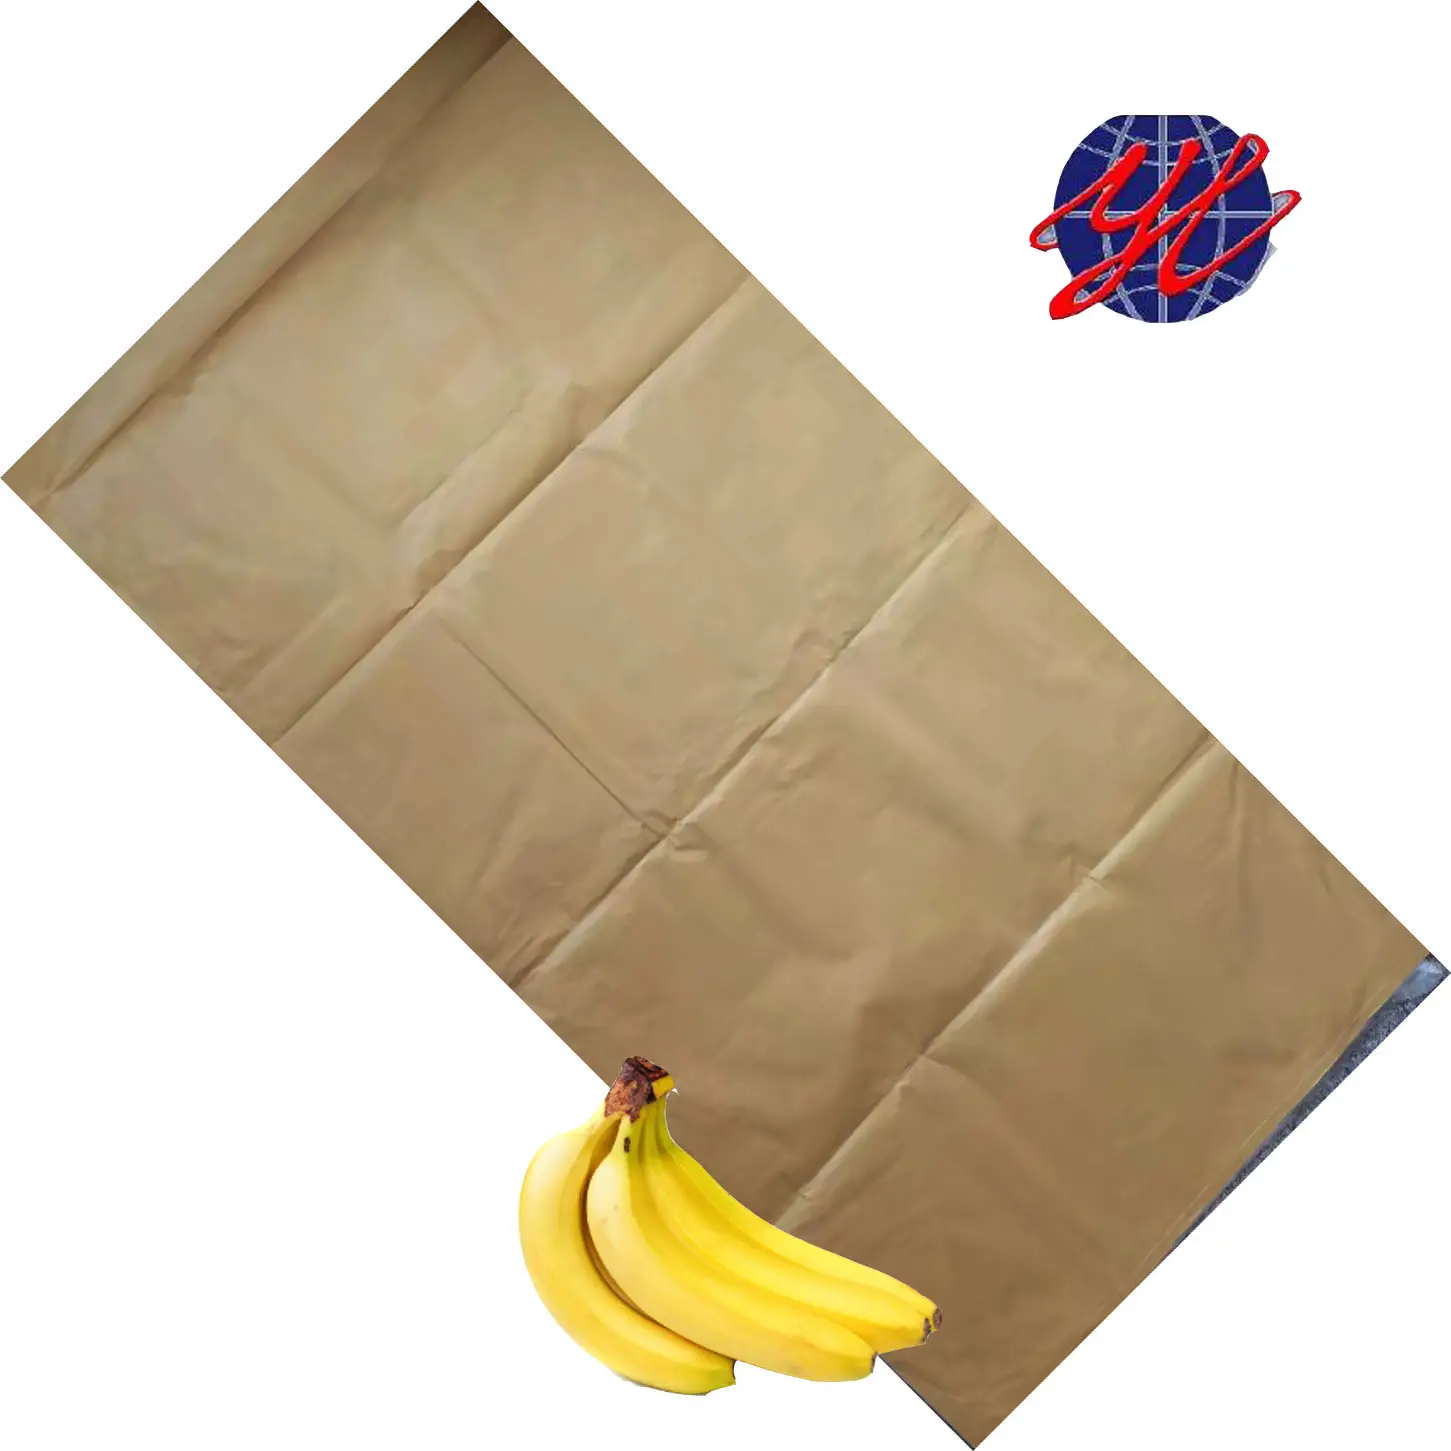 Australia Hot Koop Banaan Groeiende Papieren Zak Fruit Bescherming Papieren Zak Voor Banaan